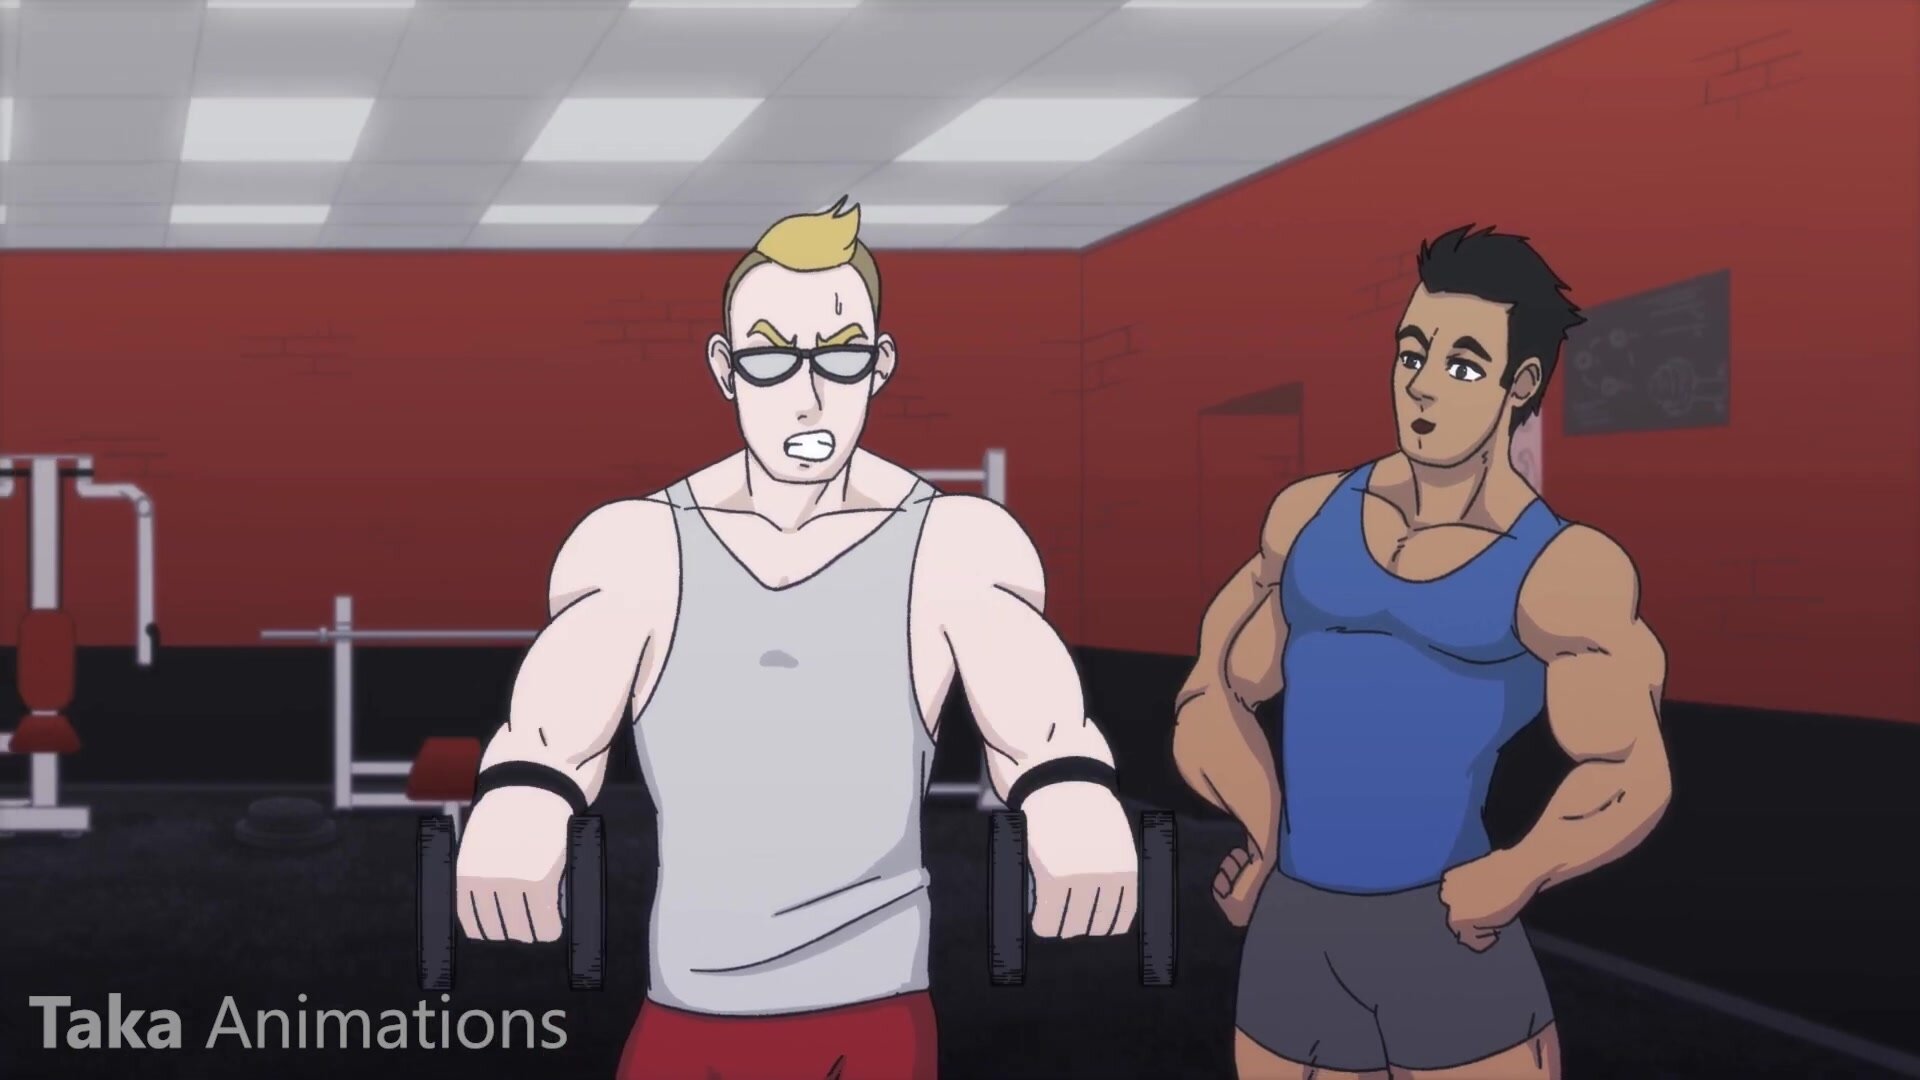 Gym Cartoon Porn - Gym Muscle Growth - ThisVid.com